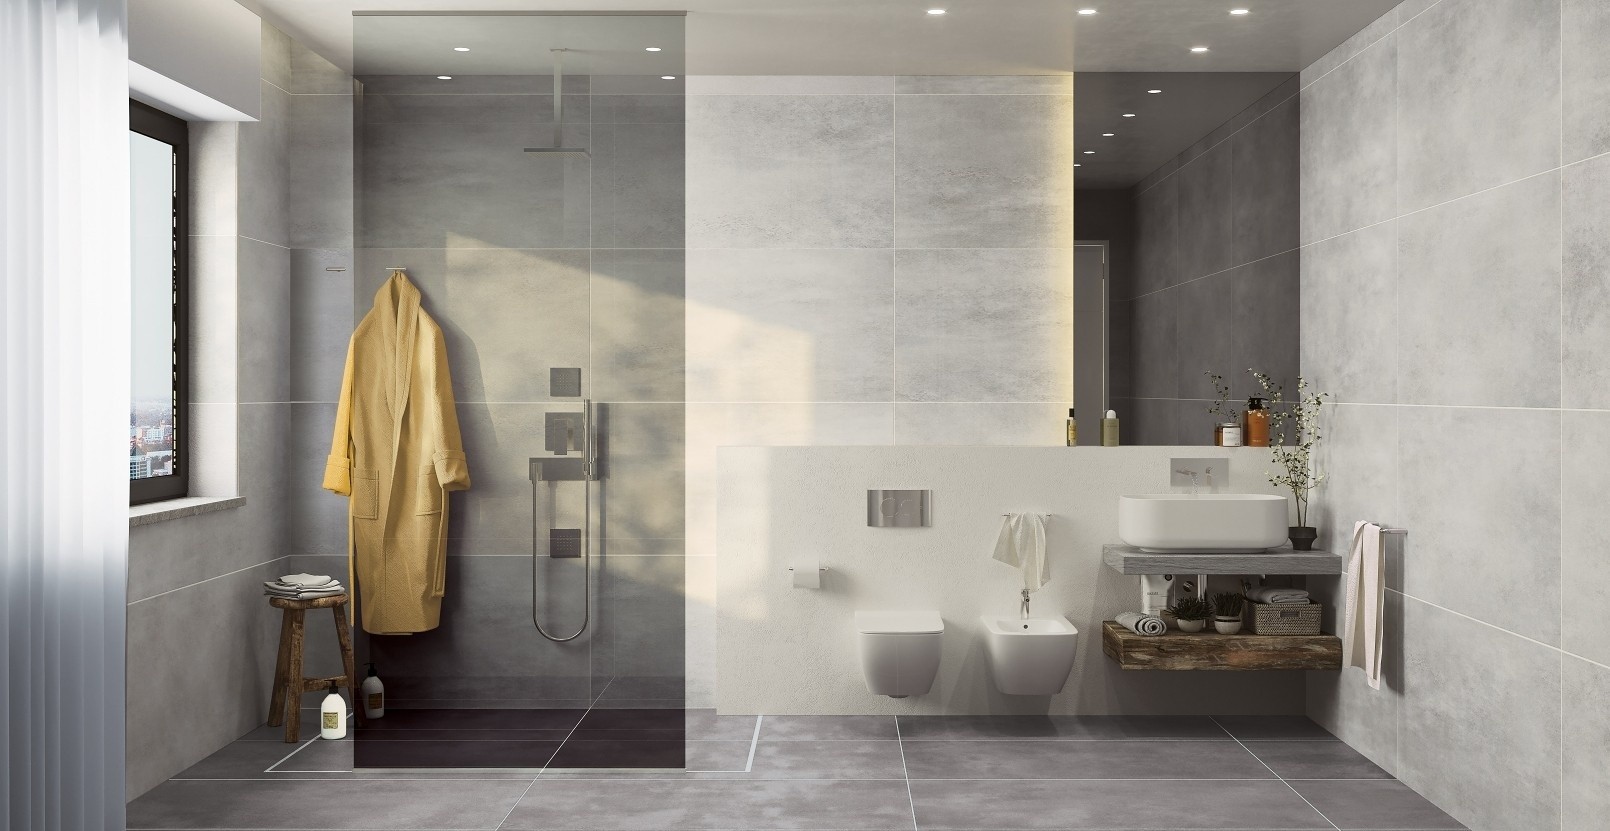 Tipy od profesionálů: Jak vybrat obklady do sprchového koutu?